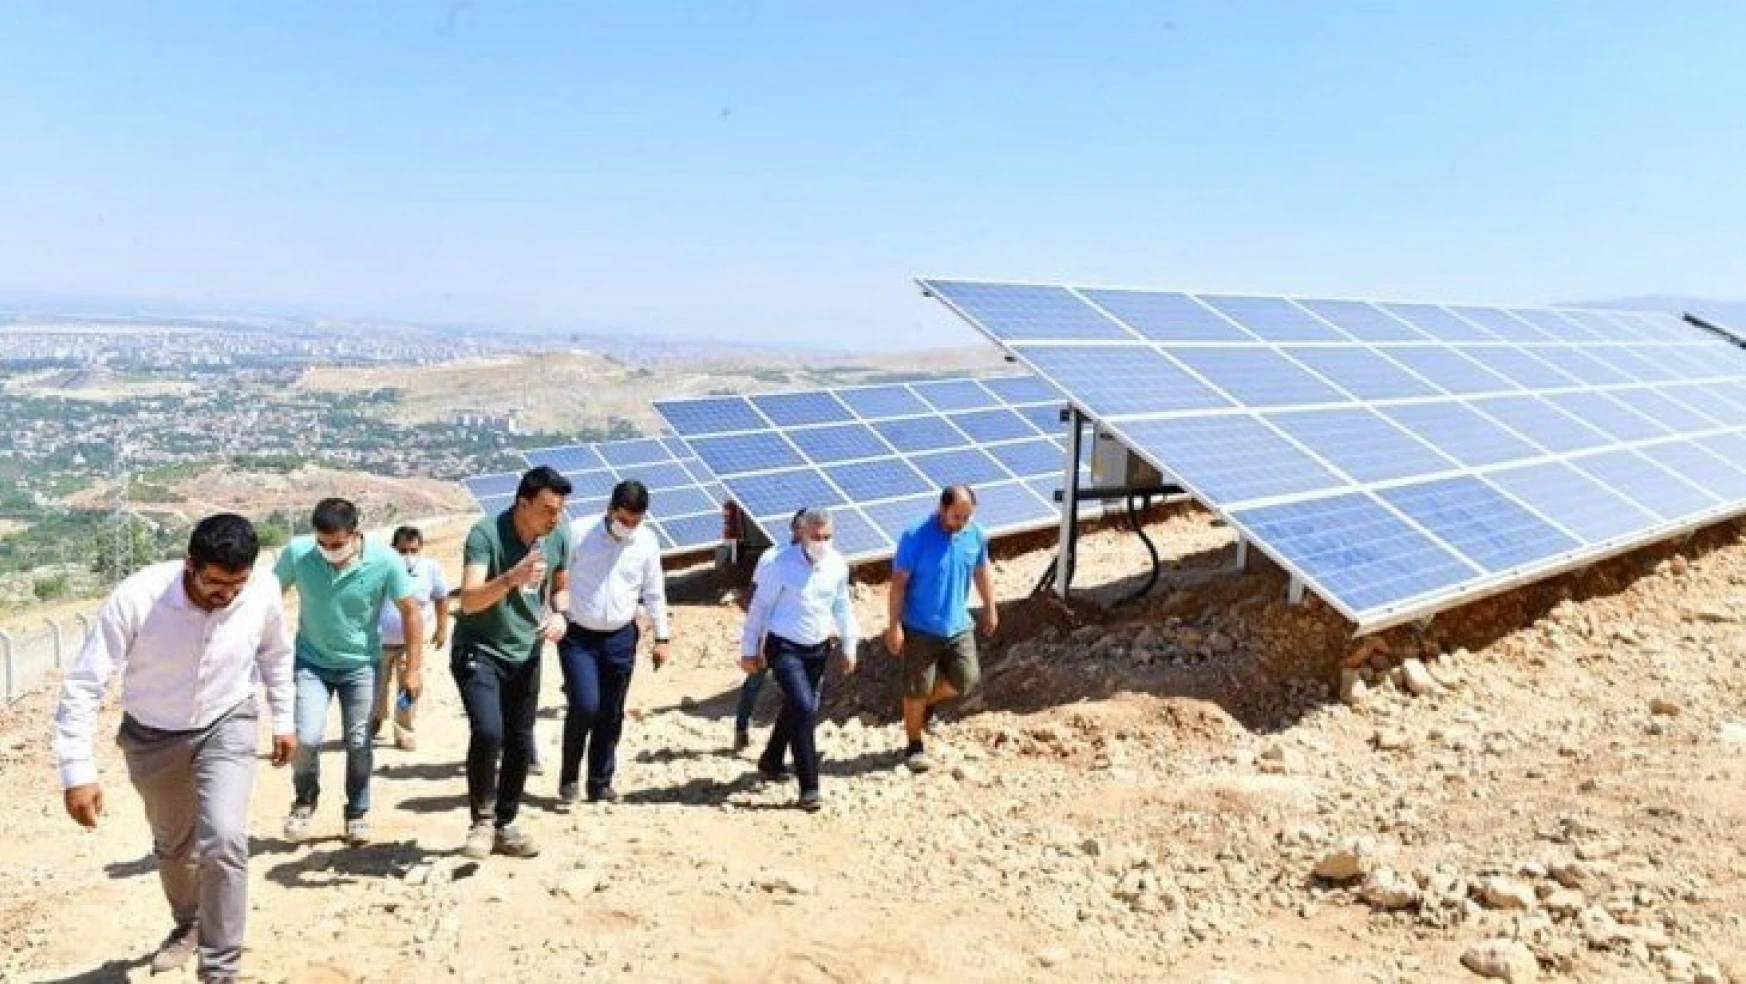 Yeşilyurt 1. Güneş Enerji Santrali'nde enerji üretimi başladı